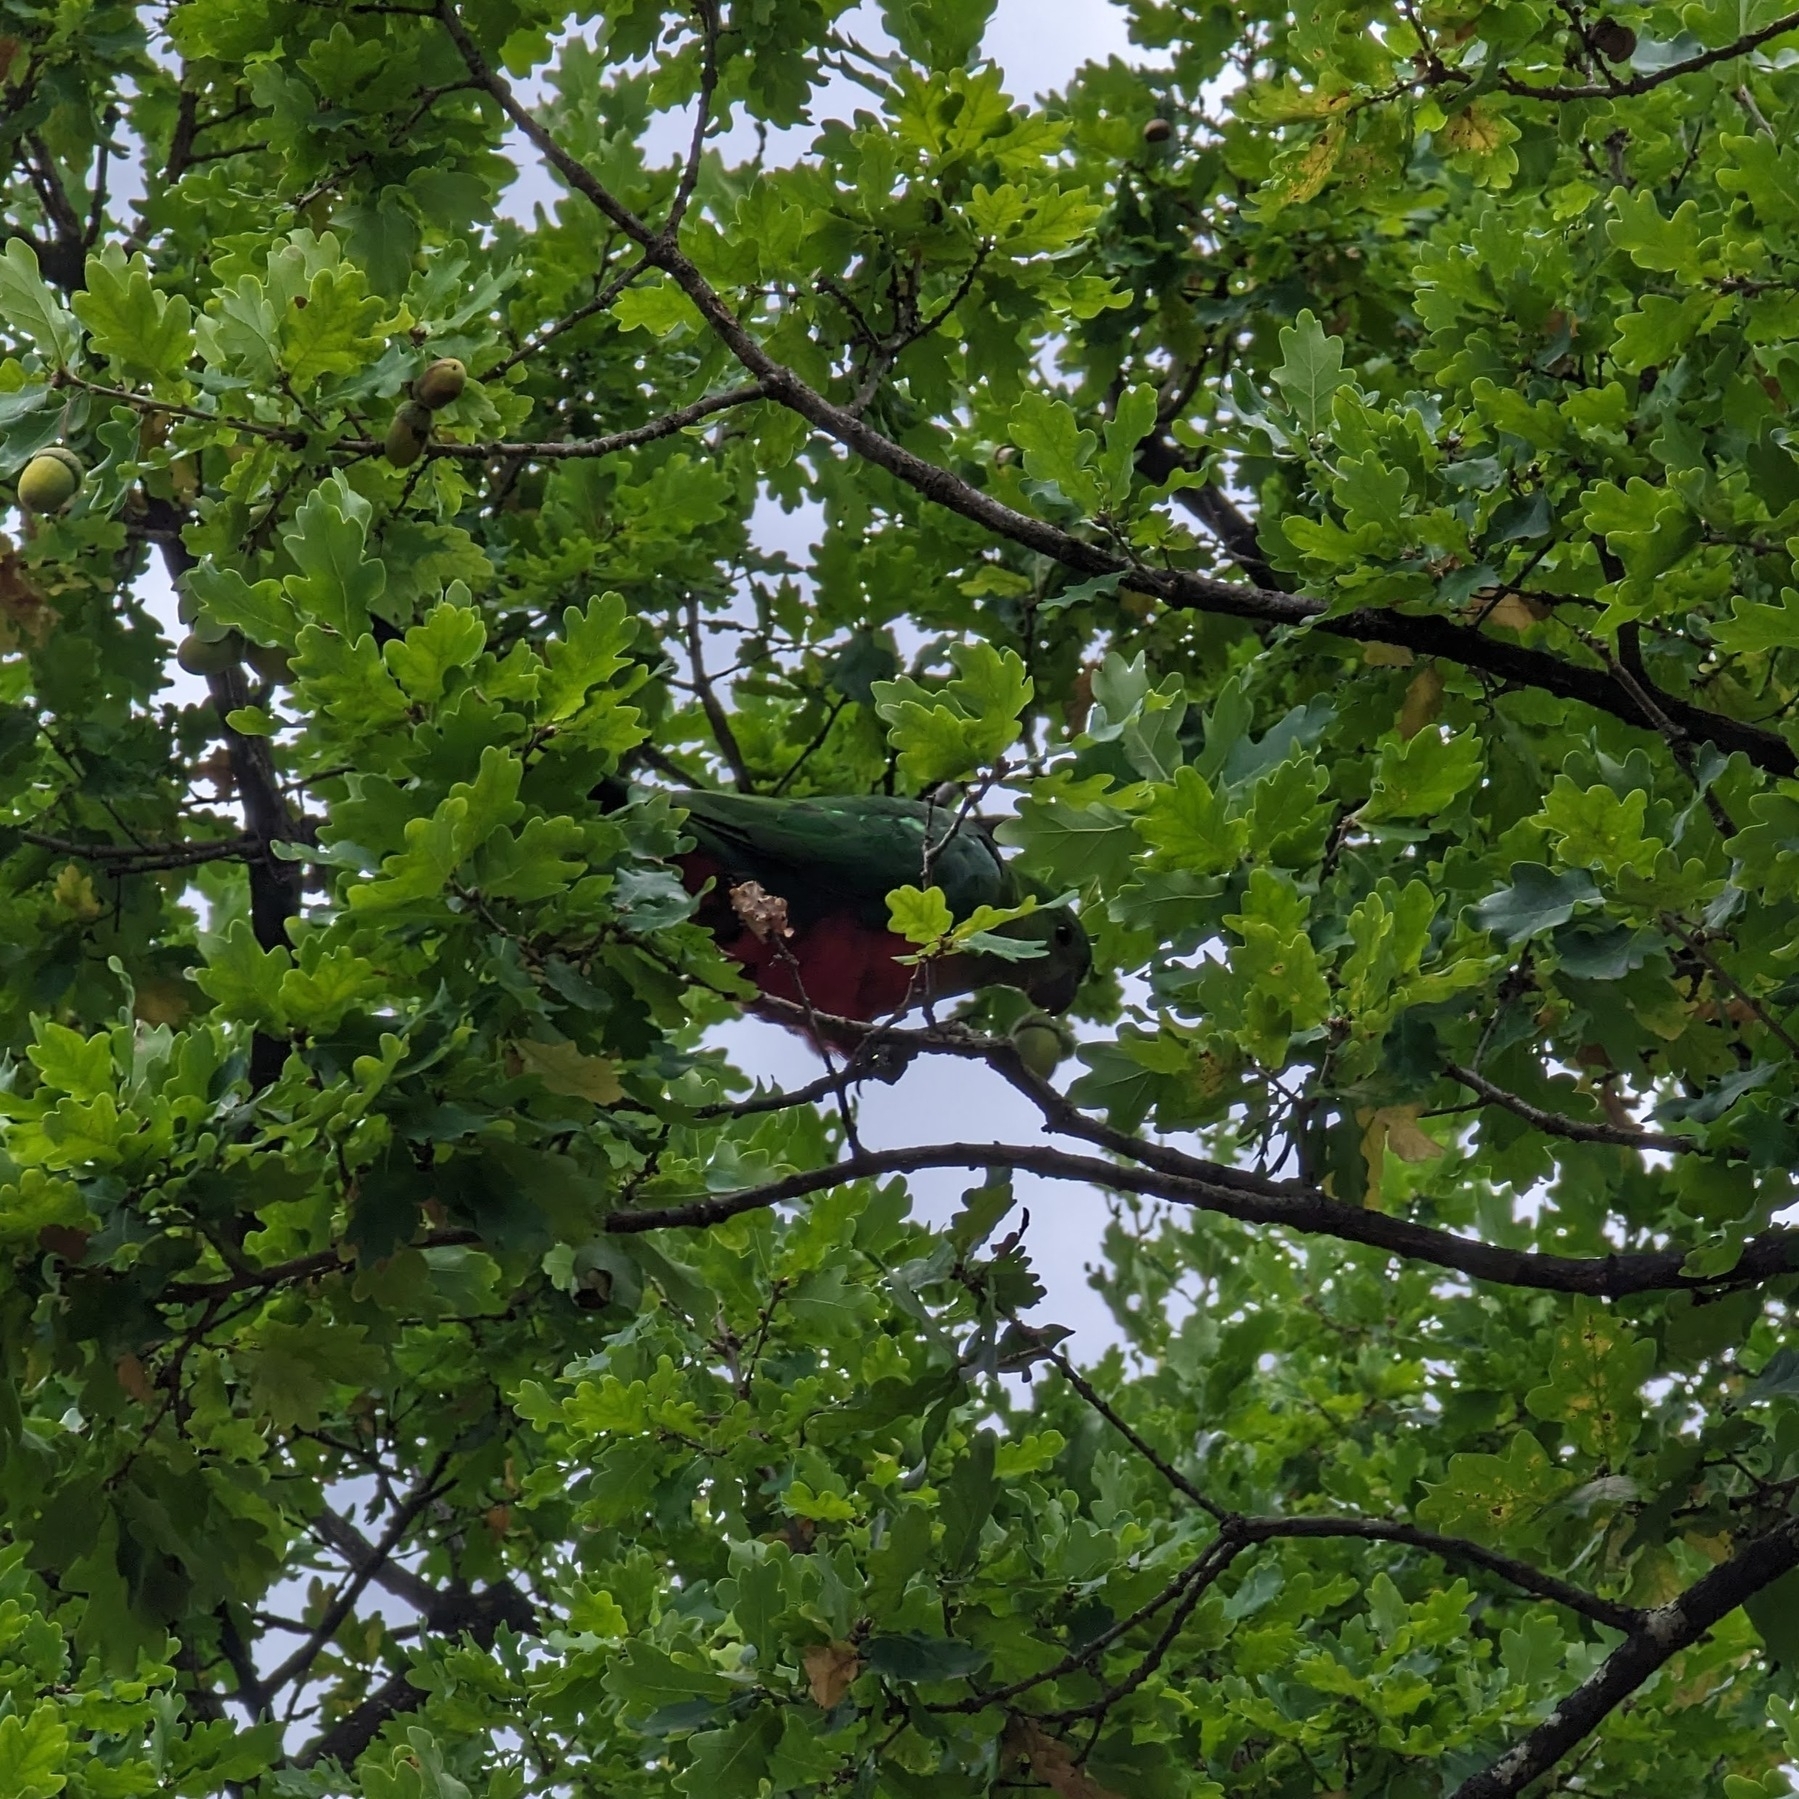 Female king parrot reaching to an acorn in an oak tree